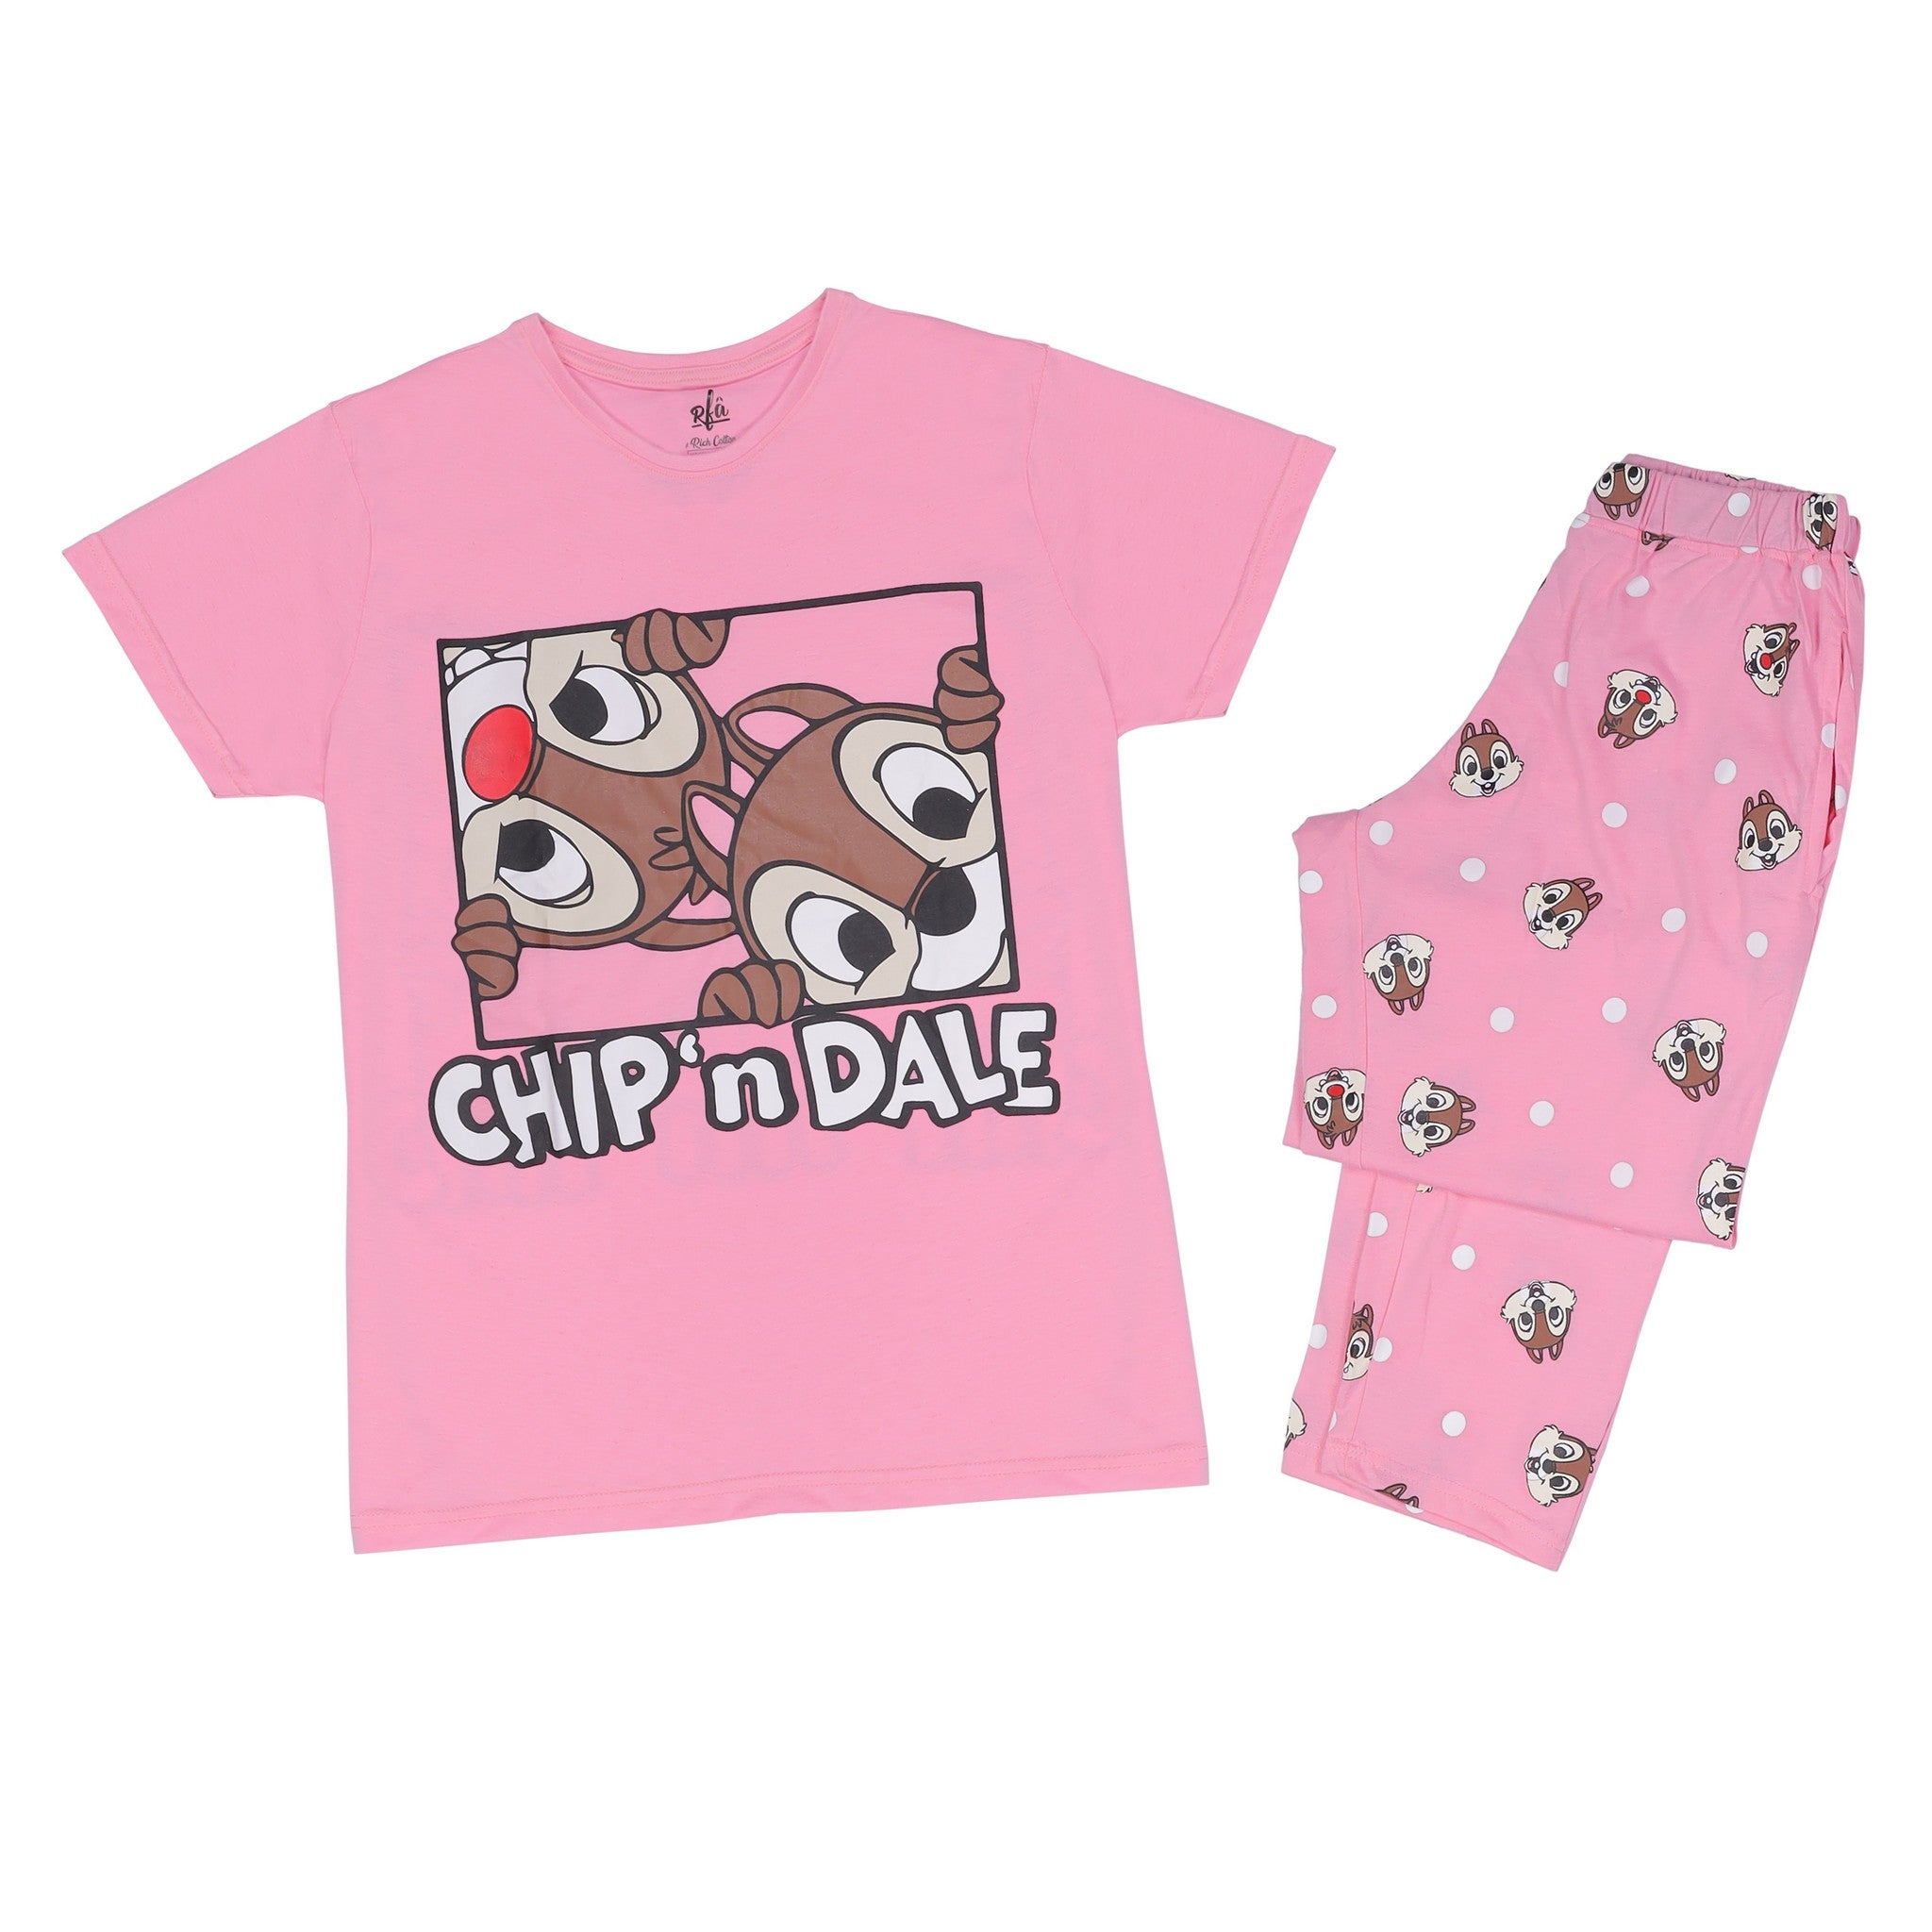 Squirrel Print Top and Pants Pink Pajama